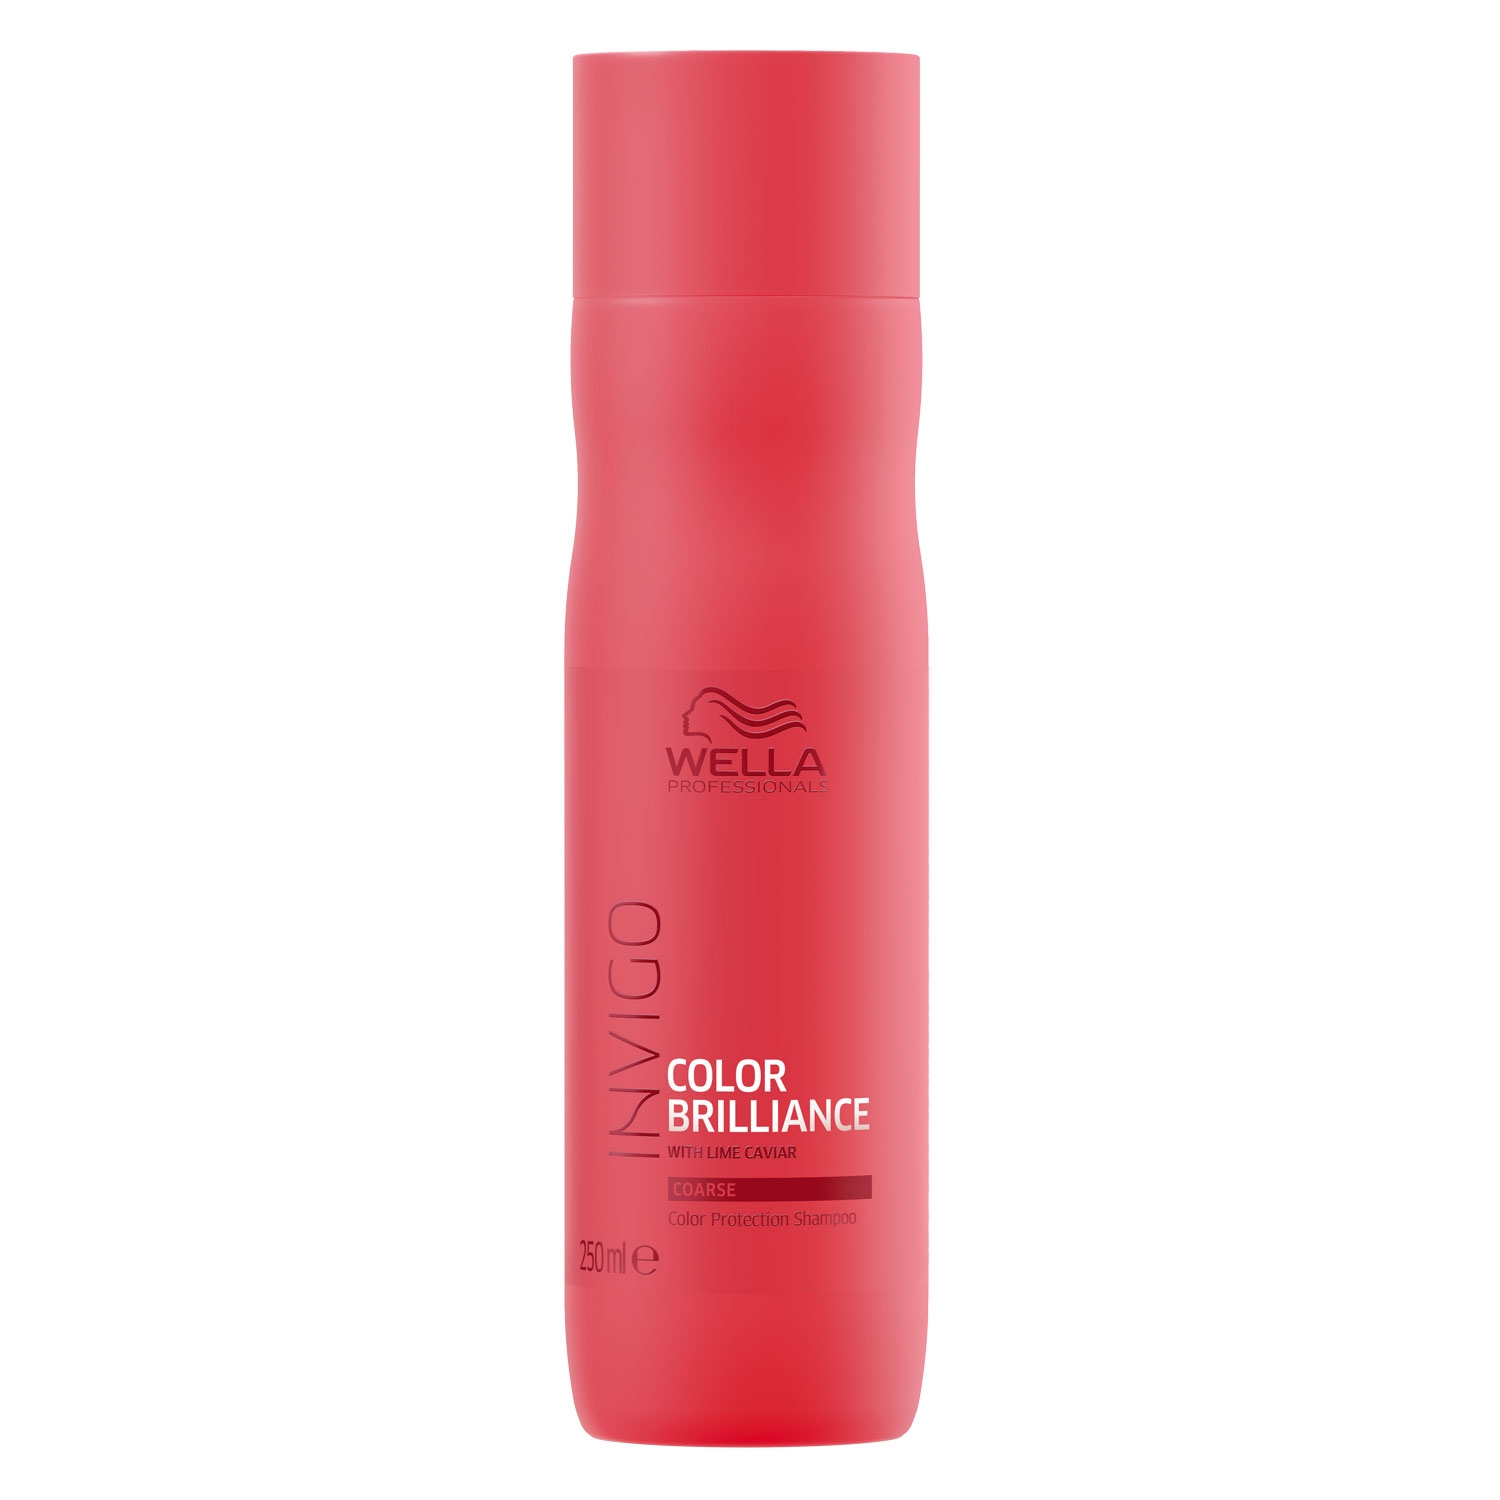 Produktbild von Invigo Color Brilliance - Color Protection Shampoo Coarse